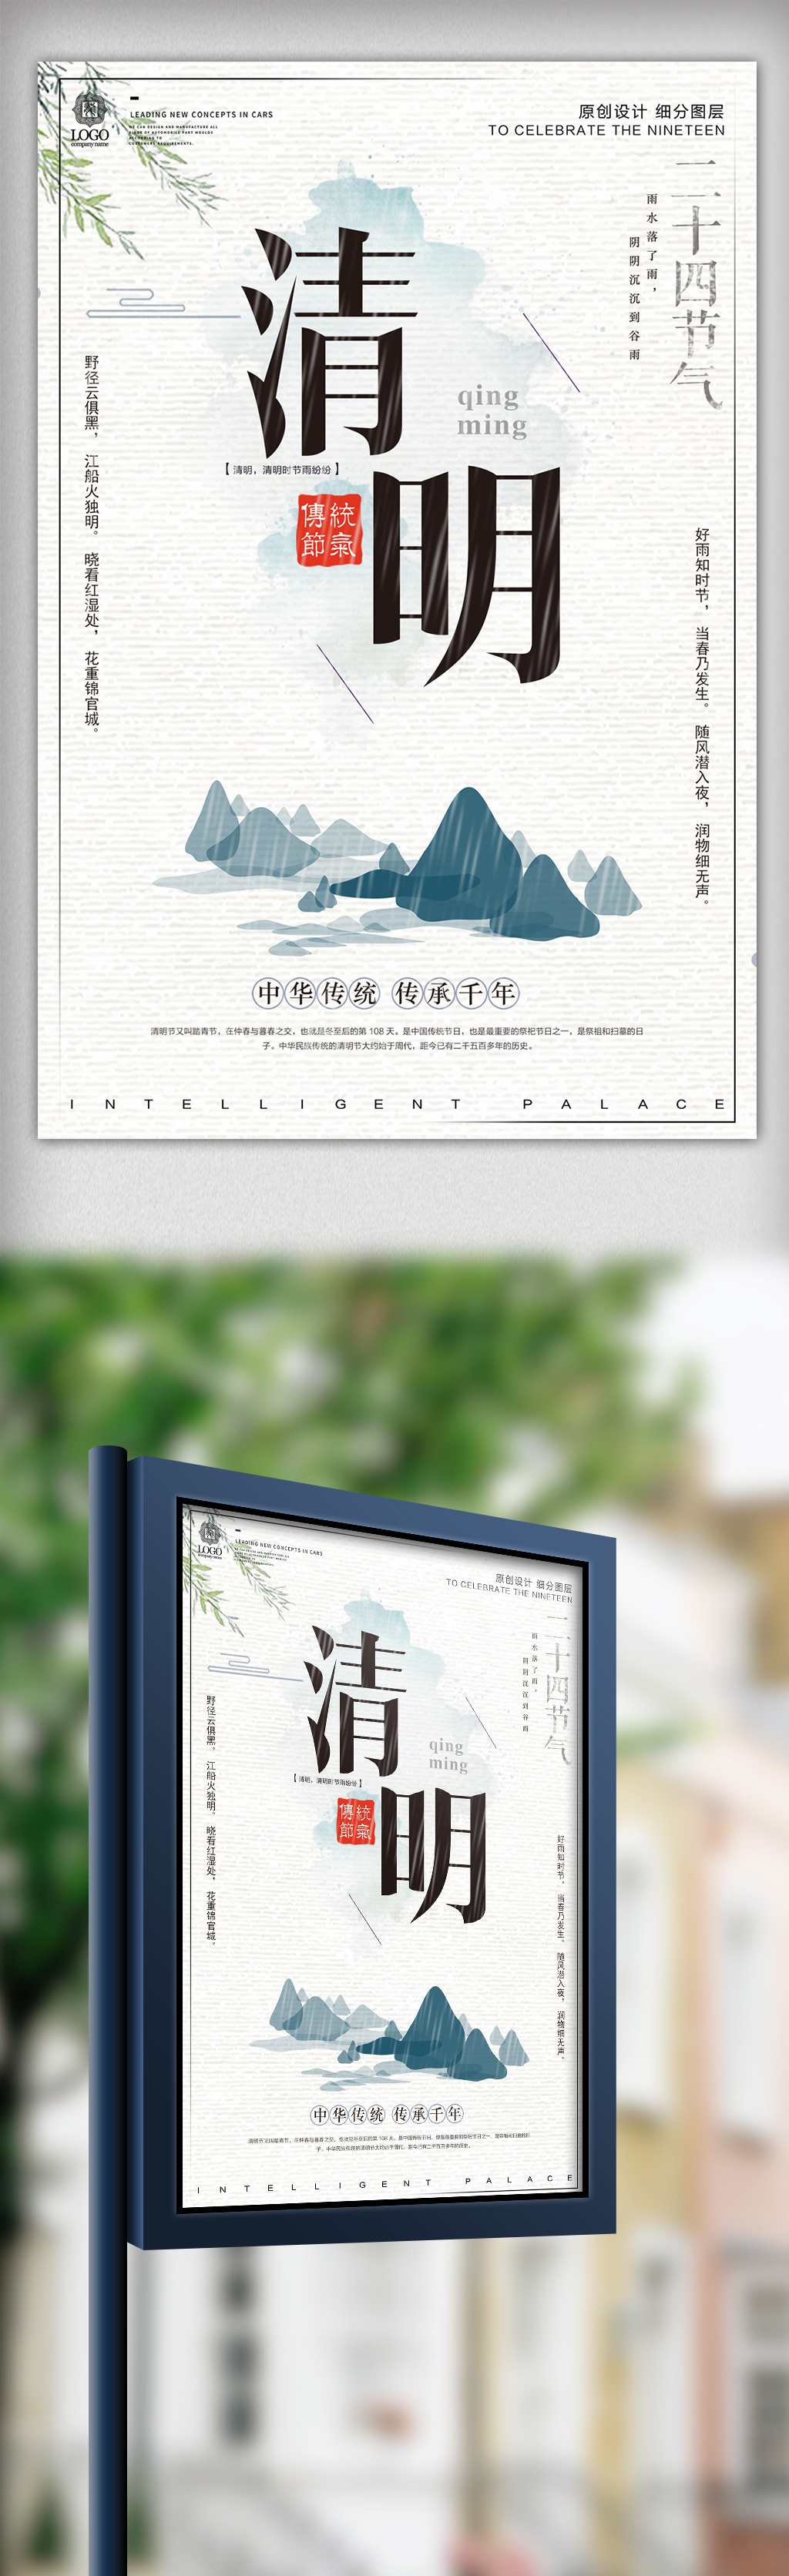 中式风格清明节宣传海报设计模版